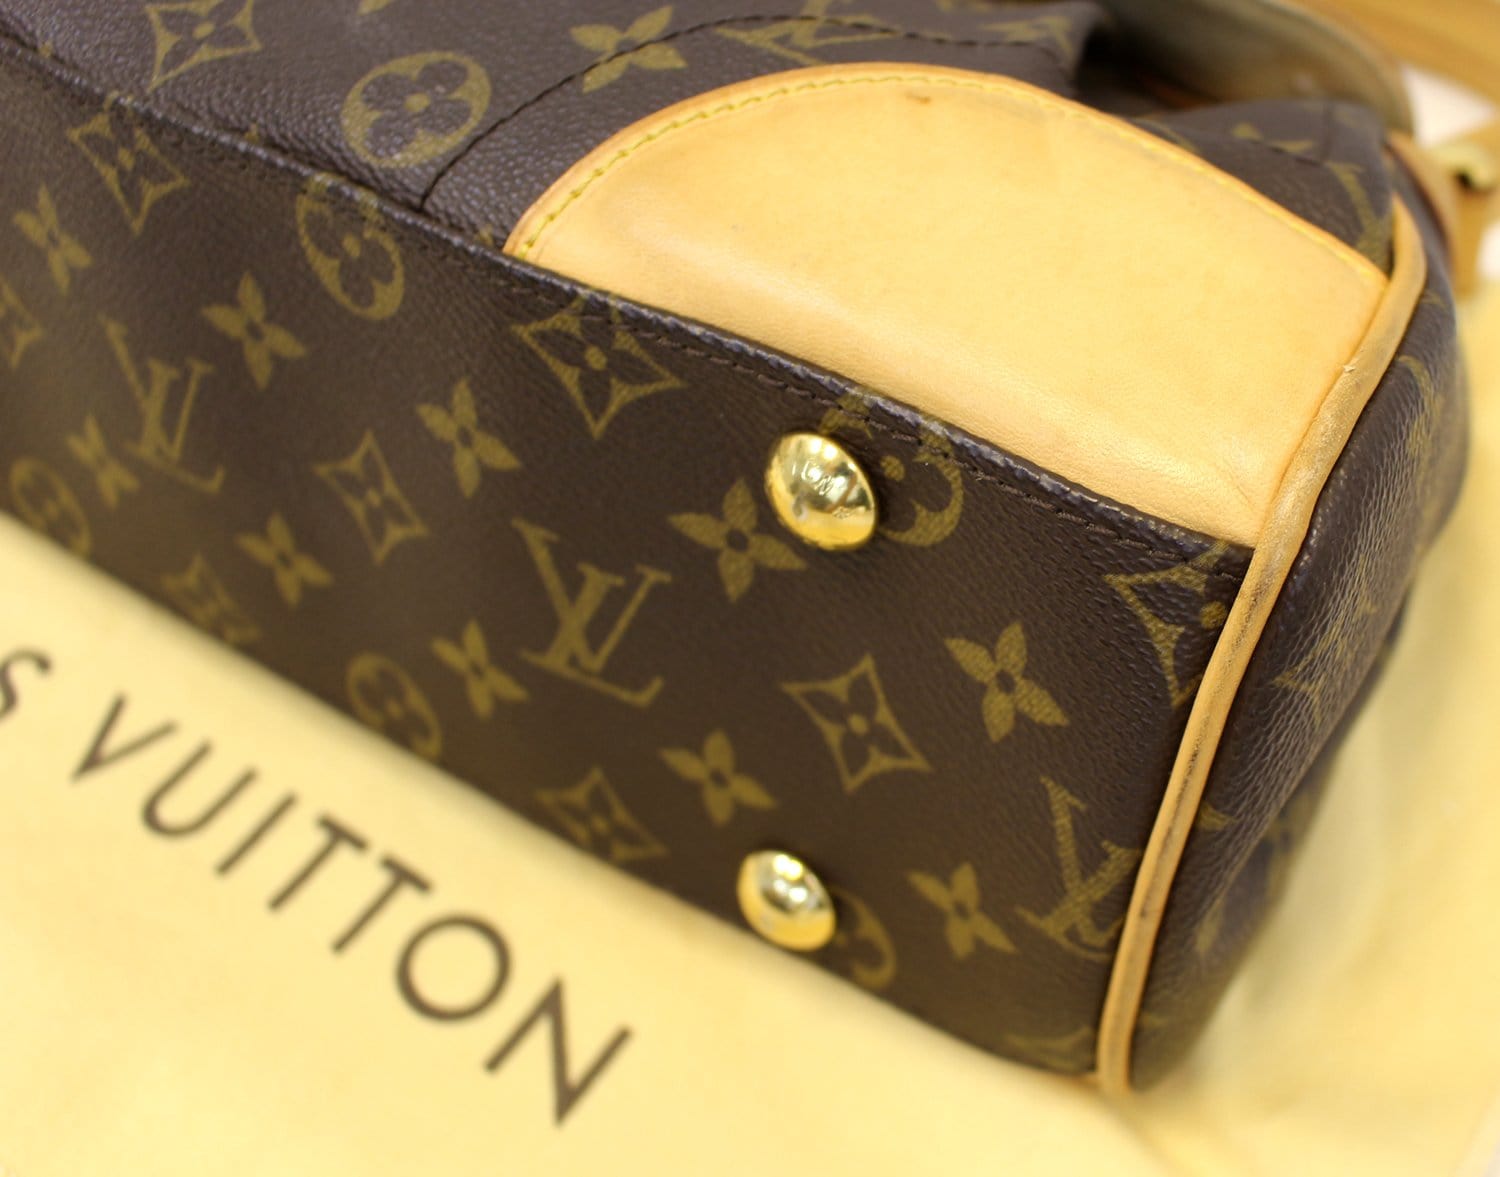 Louis Vuitton Monogram Canvas Beverly MM Shoulder Bag Auction